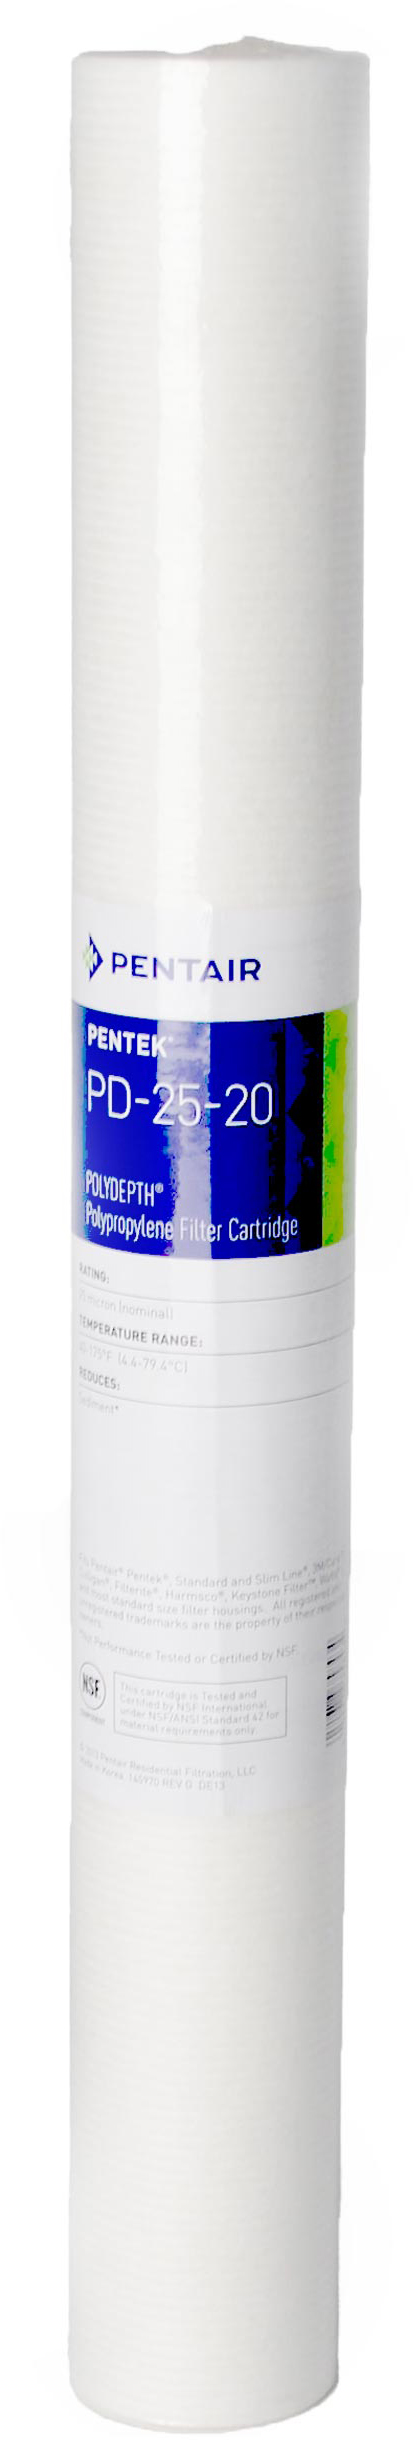 Картридж для фильтра Pentek PD-5-20 Polydepth (155756-43)